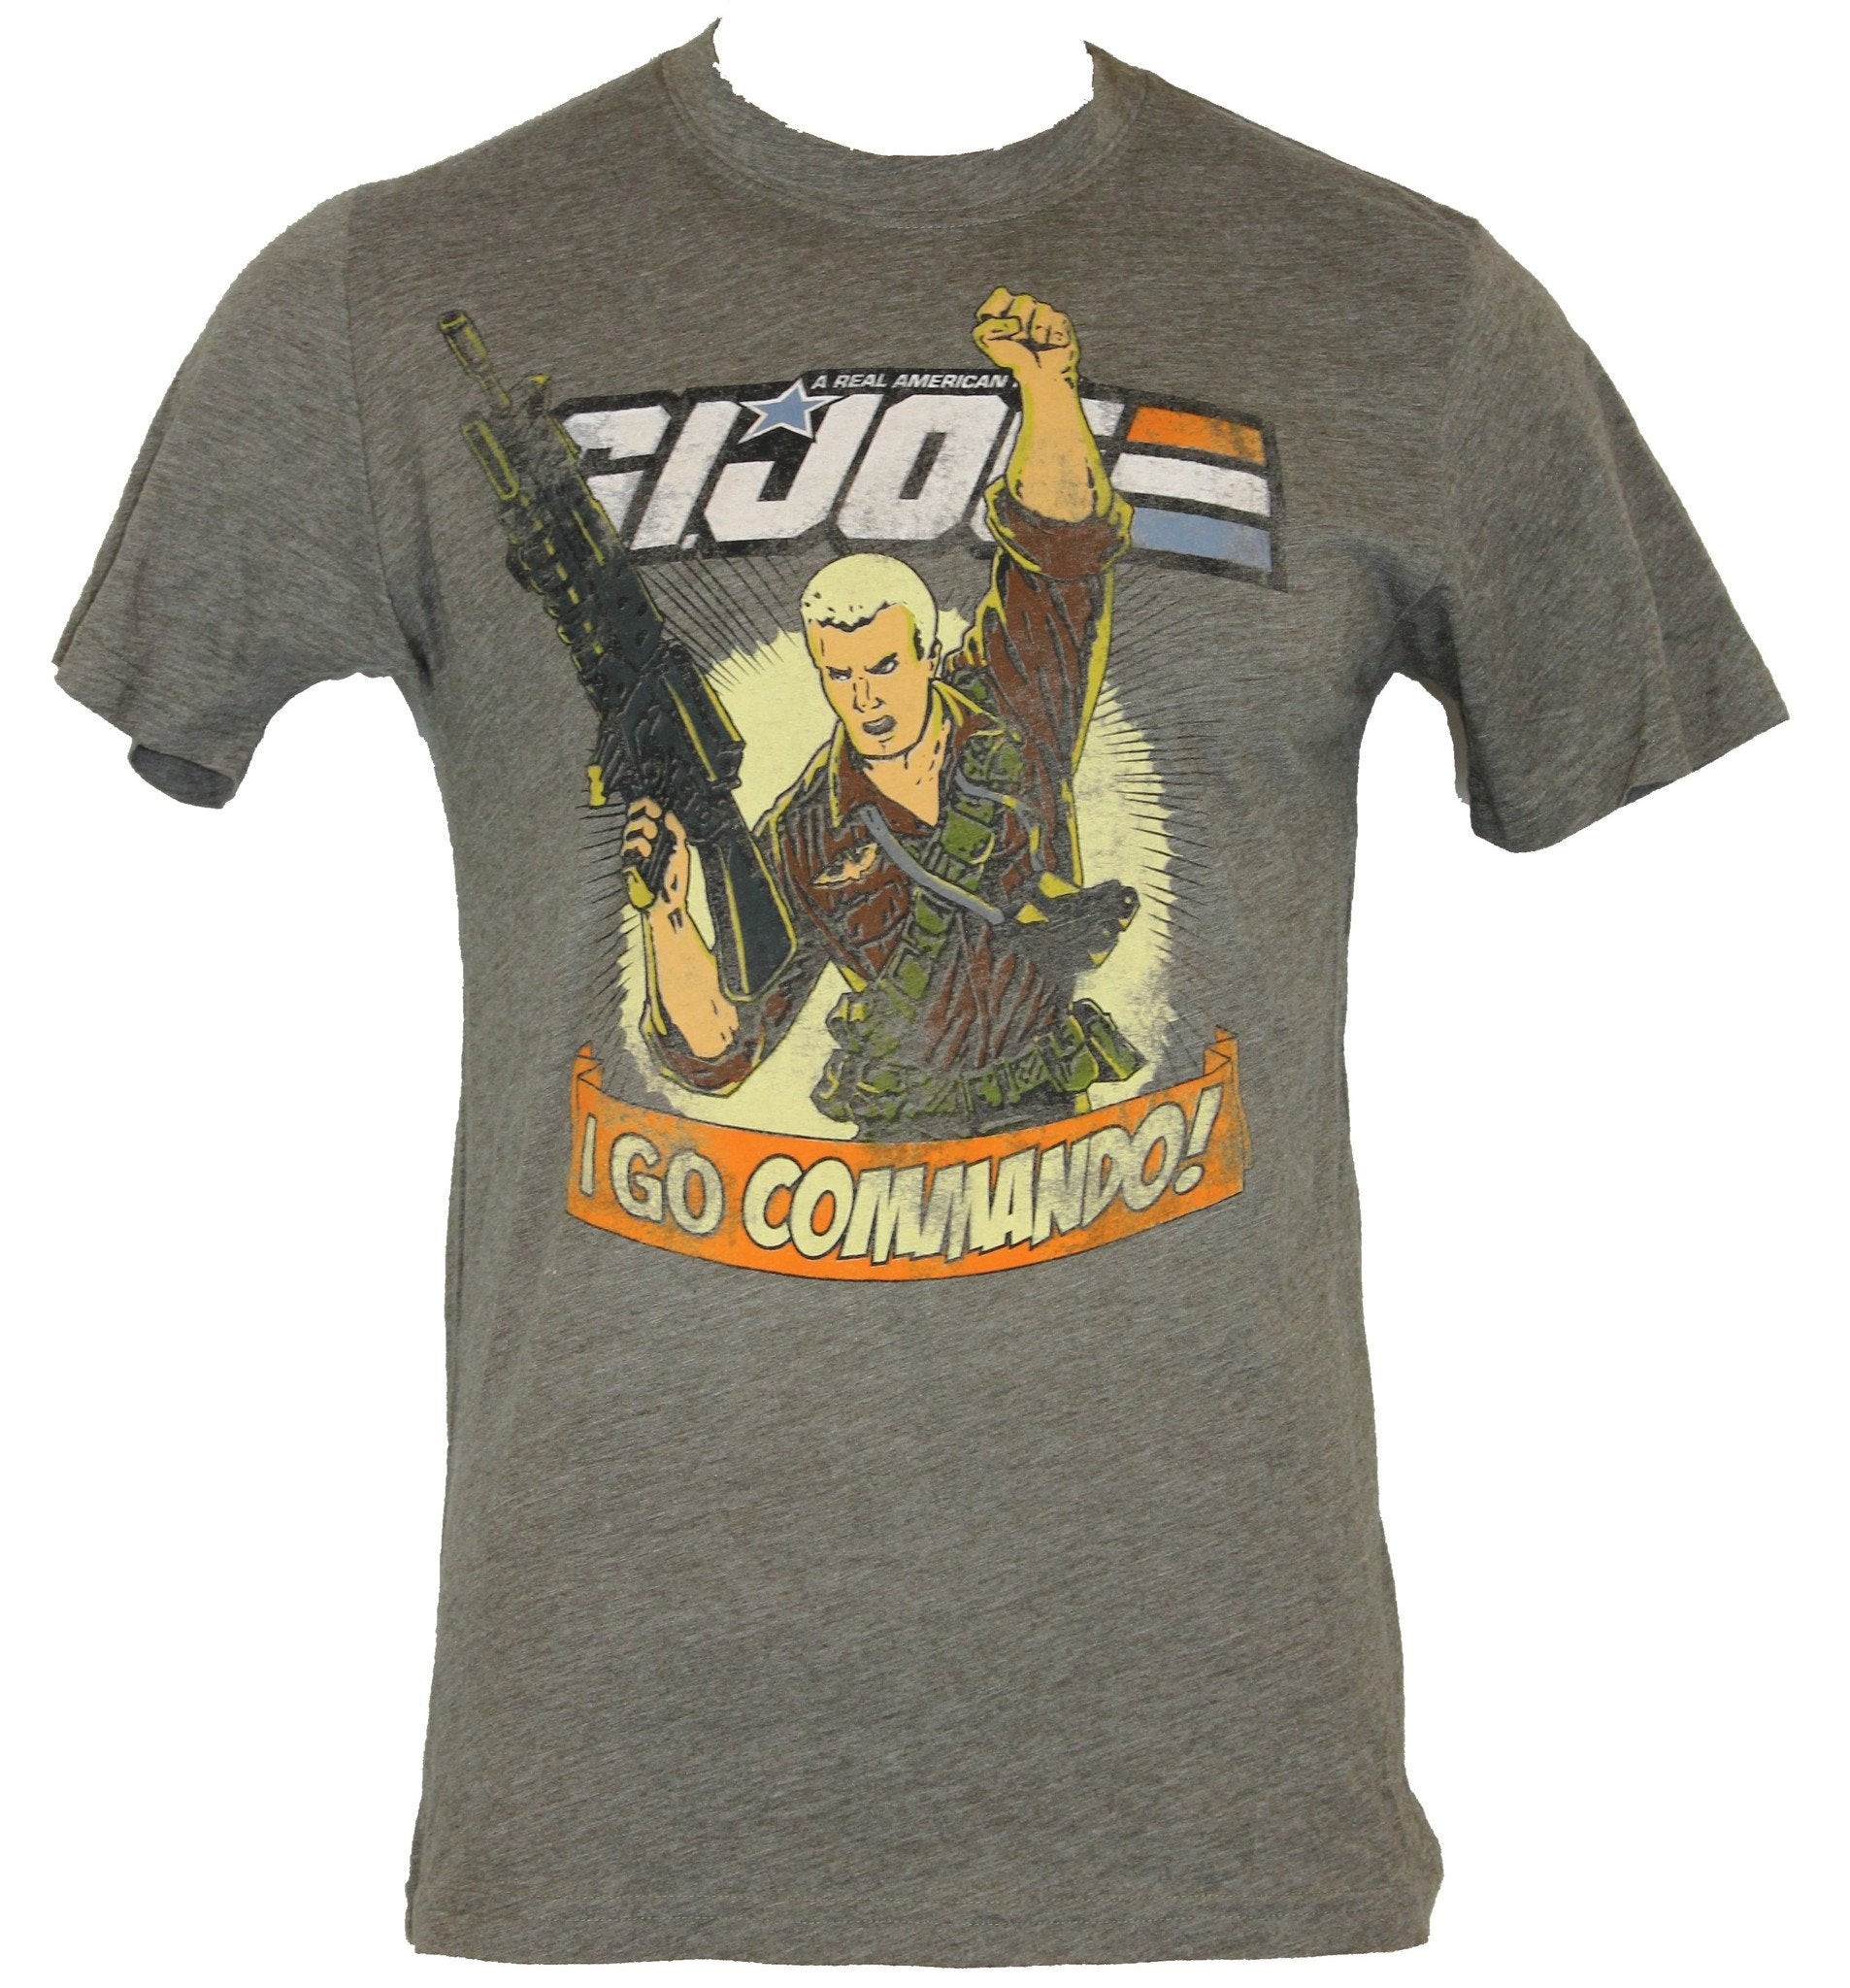 GI Joe (G.I. Joe)  Mens T-Shirt - "I Go Commando!" Duke Screaming Image